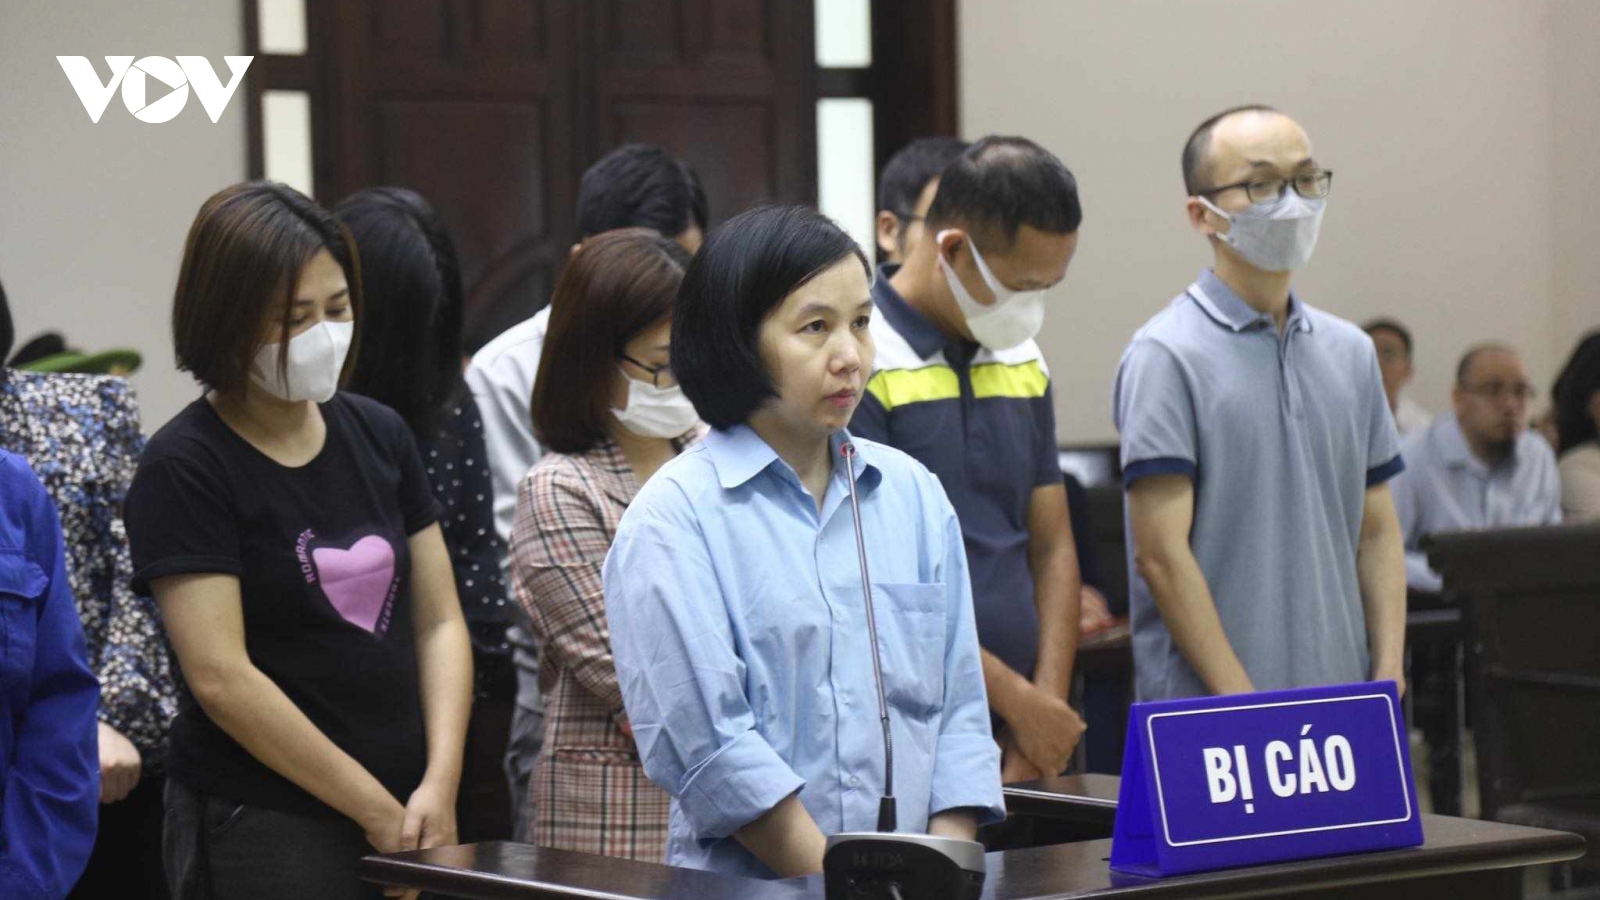 Chưa tuyên án vụ "siêu lừa" Nguyễn Thị Hà Thành vì xuất hiện tình tiết mới